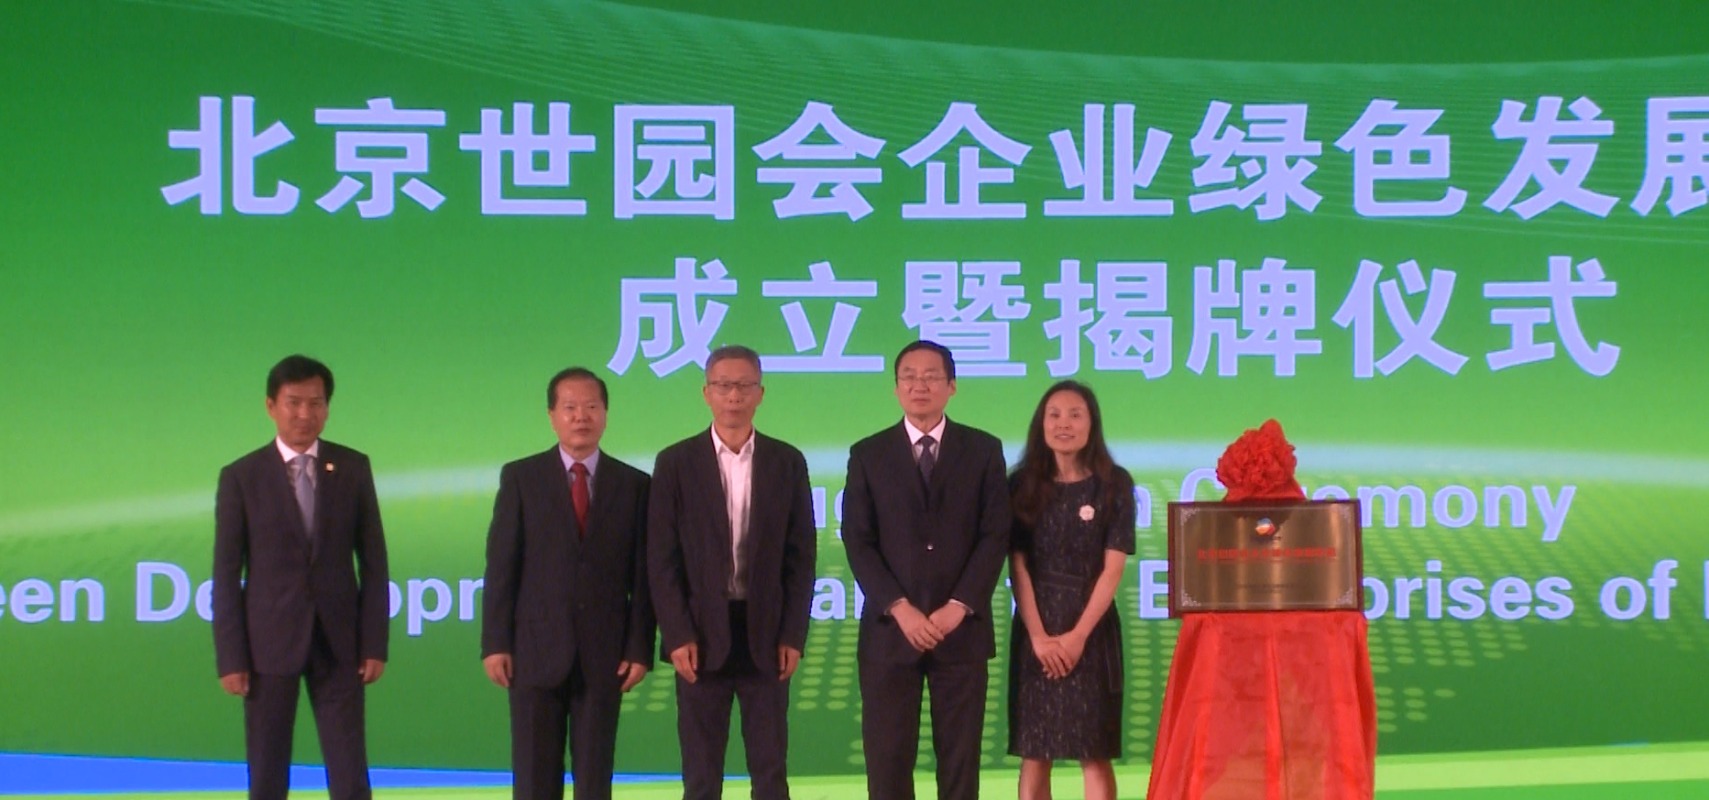 《北京世园会企业绿色发展倡议》在京发布